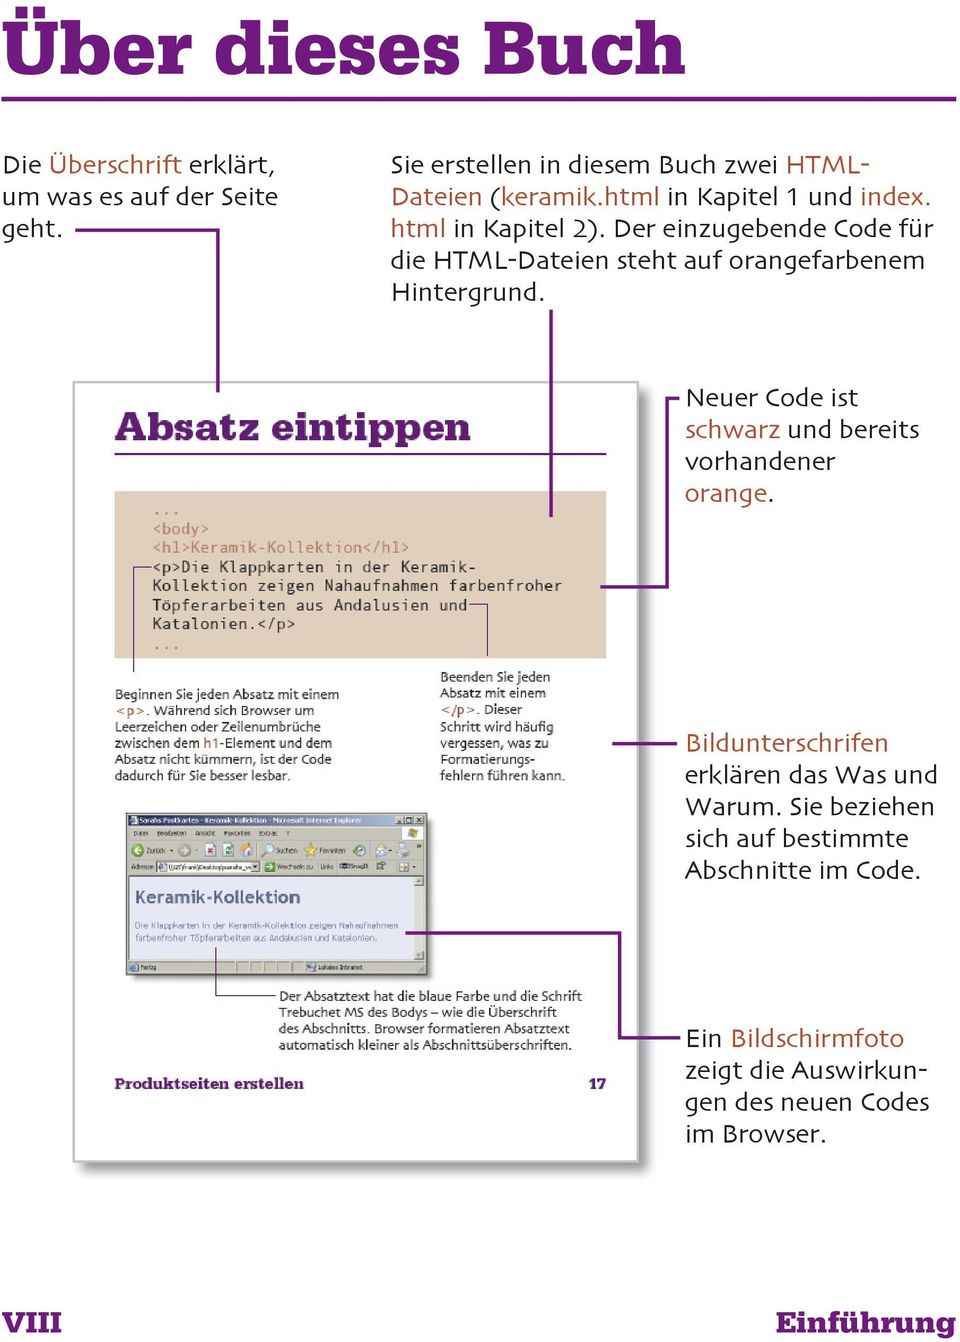 Der einzugebende Code für die HTML-Dateien steht auf orangefarbenem Hintergrund.